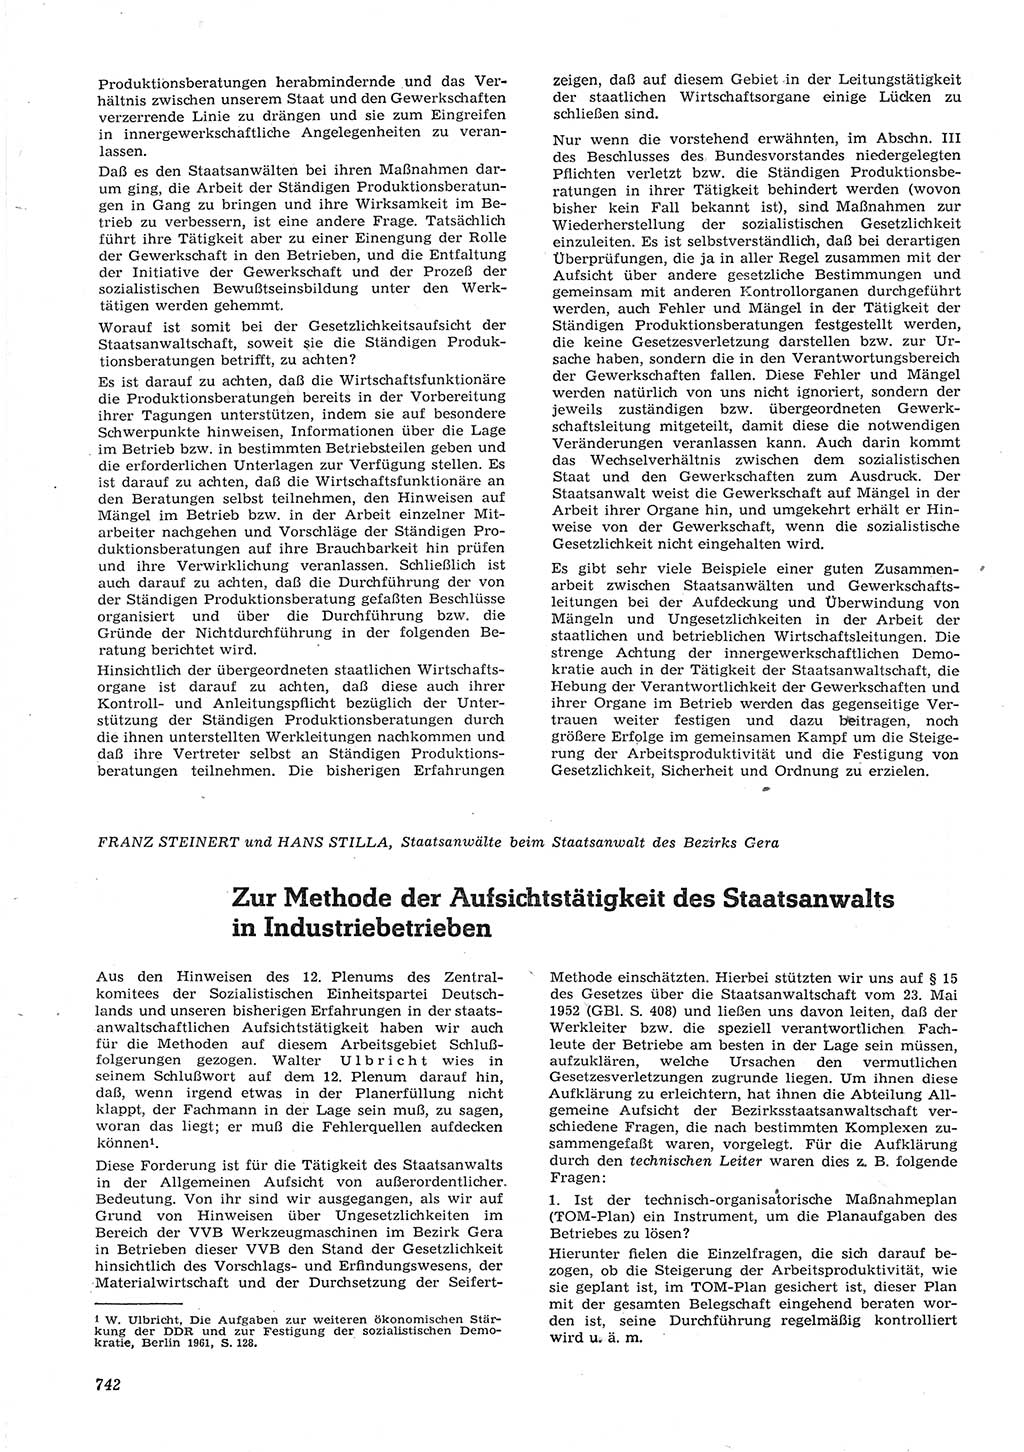 Neue Justiz (NJ), Zeitschrift für Recht und Rechtswissenschaft [Deutsche Demokratische Republik (DDR)], 15. Jahrgang 1961, Seite 742 (NJ DDR 1961, S. 742)